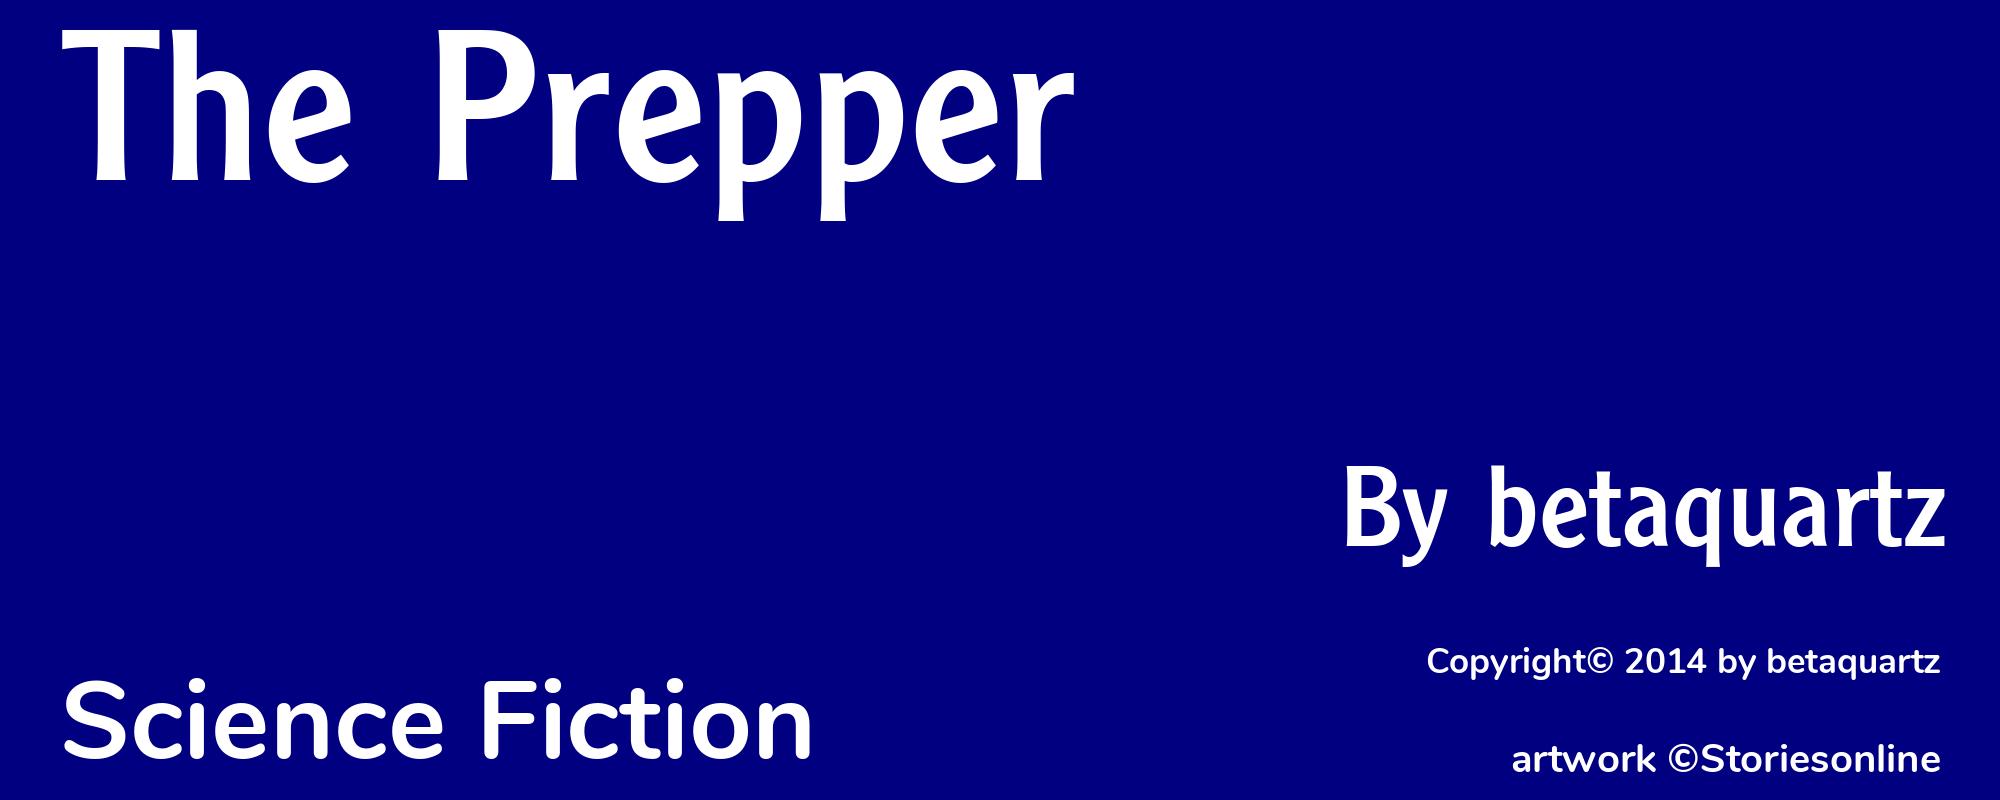 The Prepper - Cover